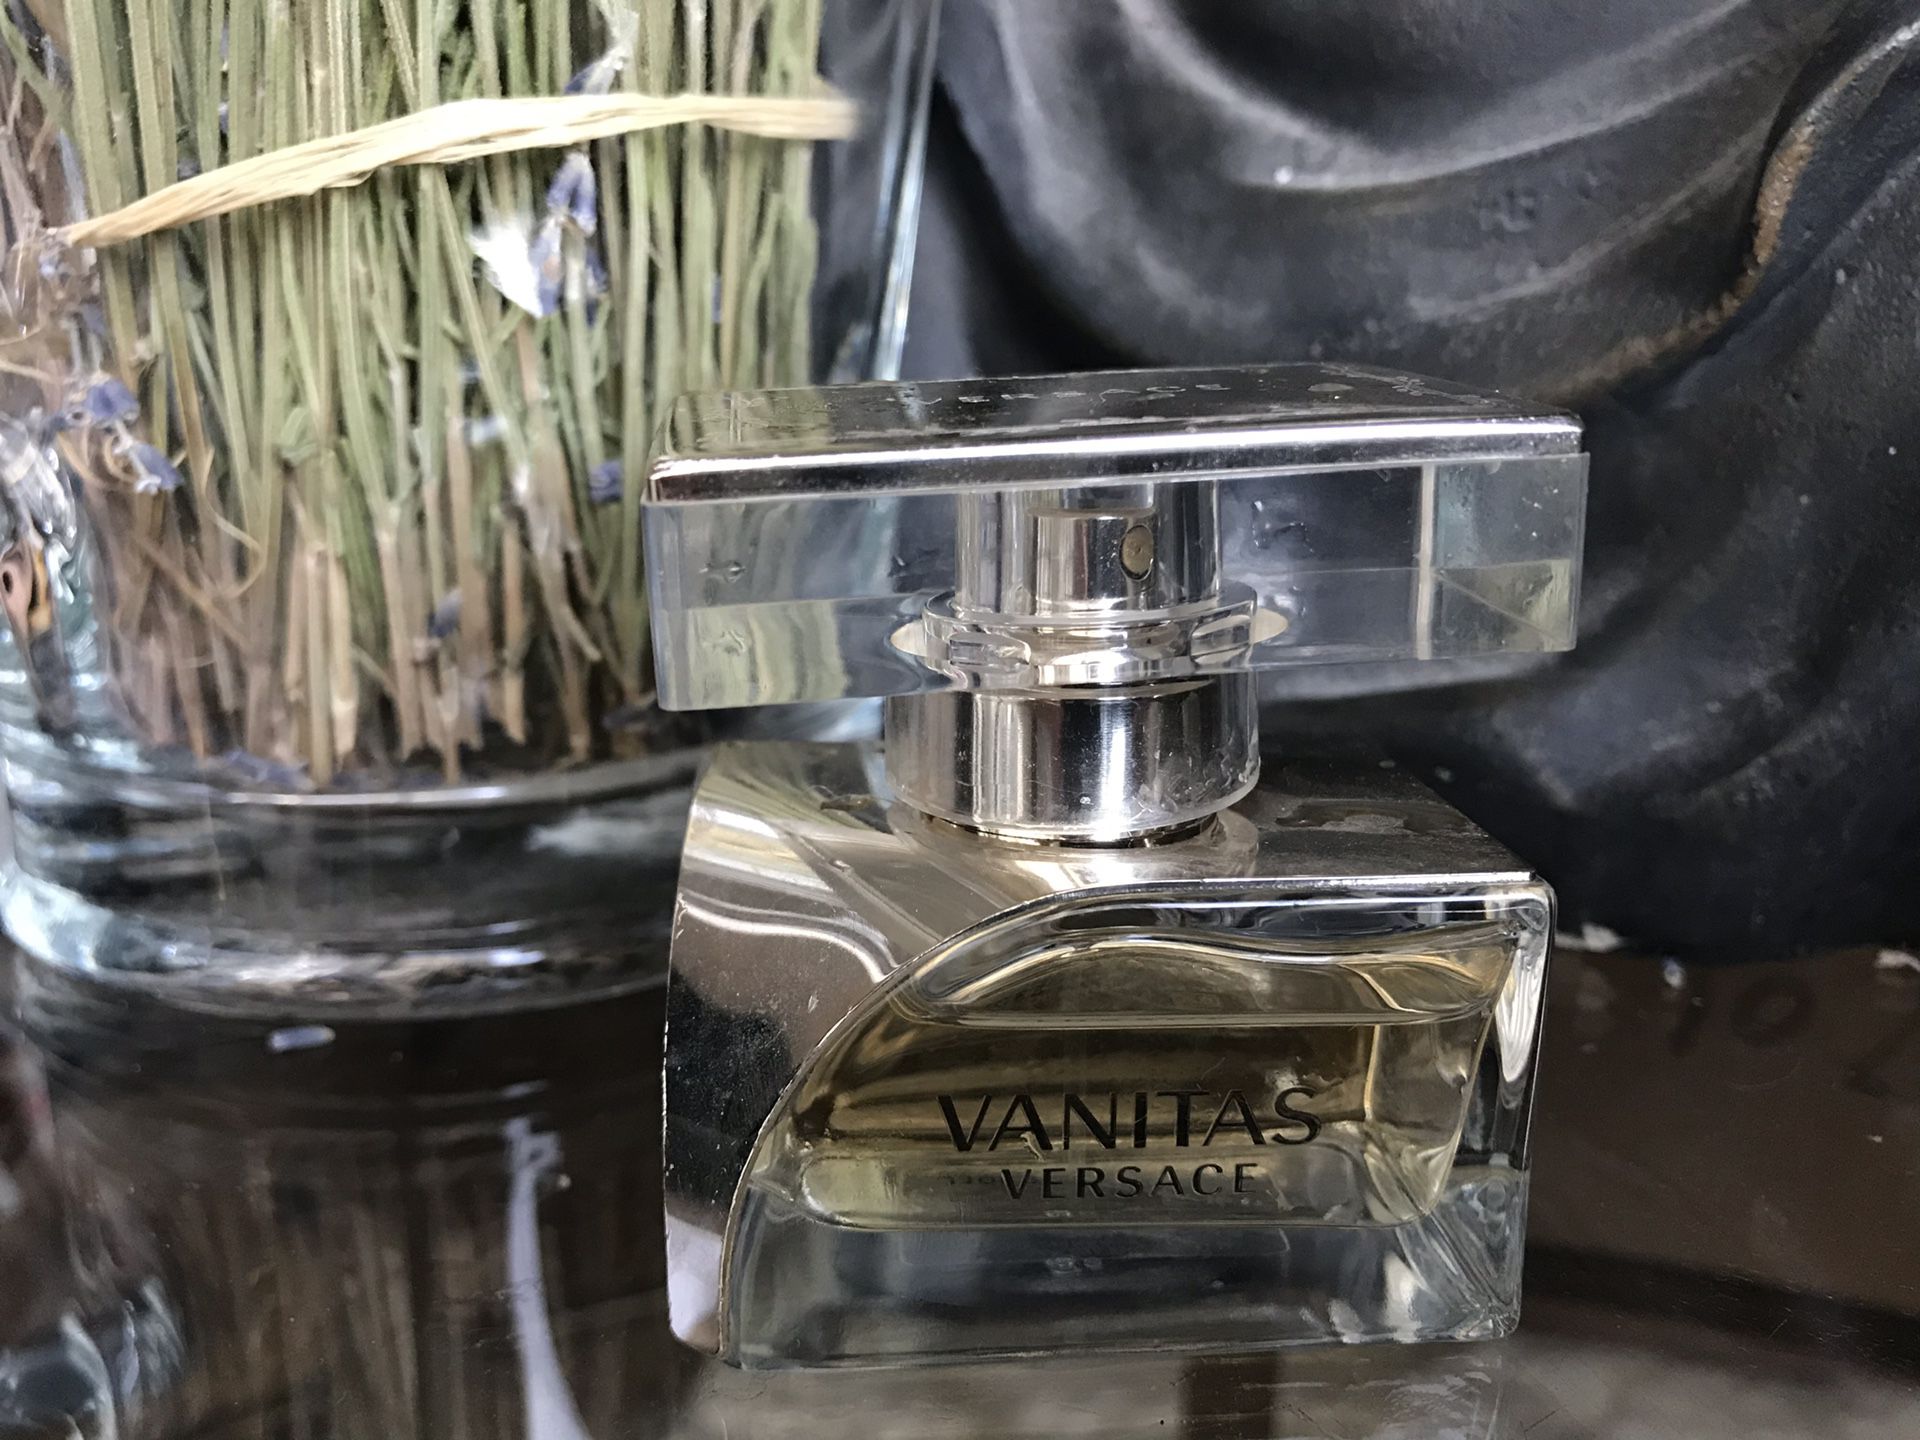 Versace Vanitas perfume 30ml $70